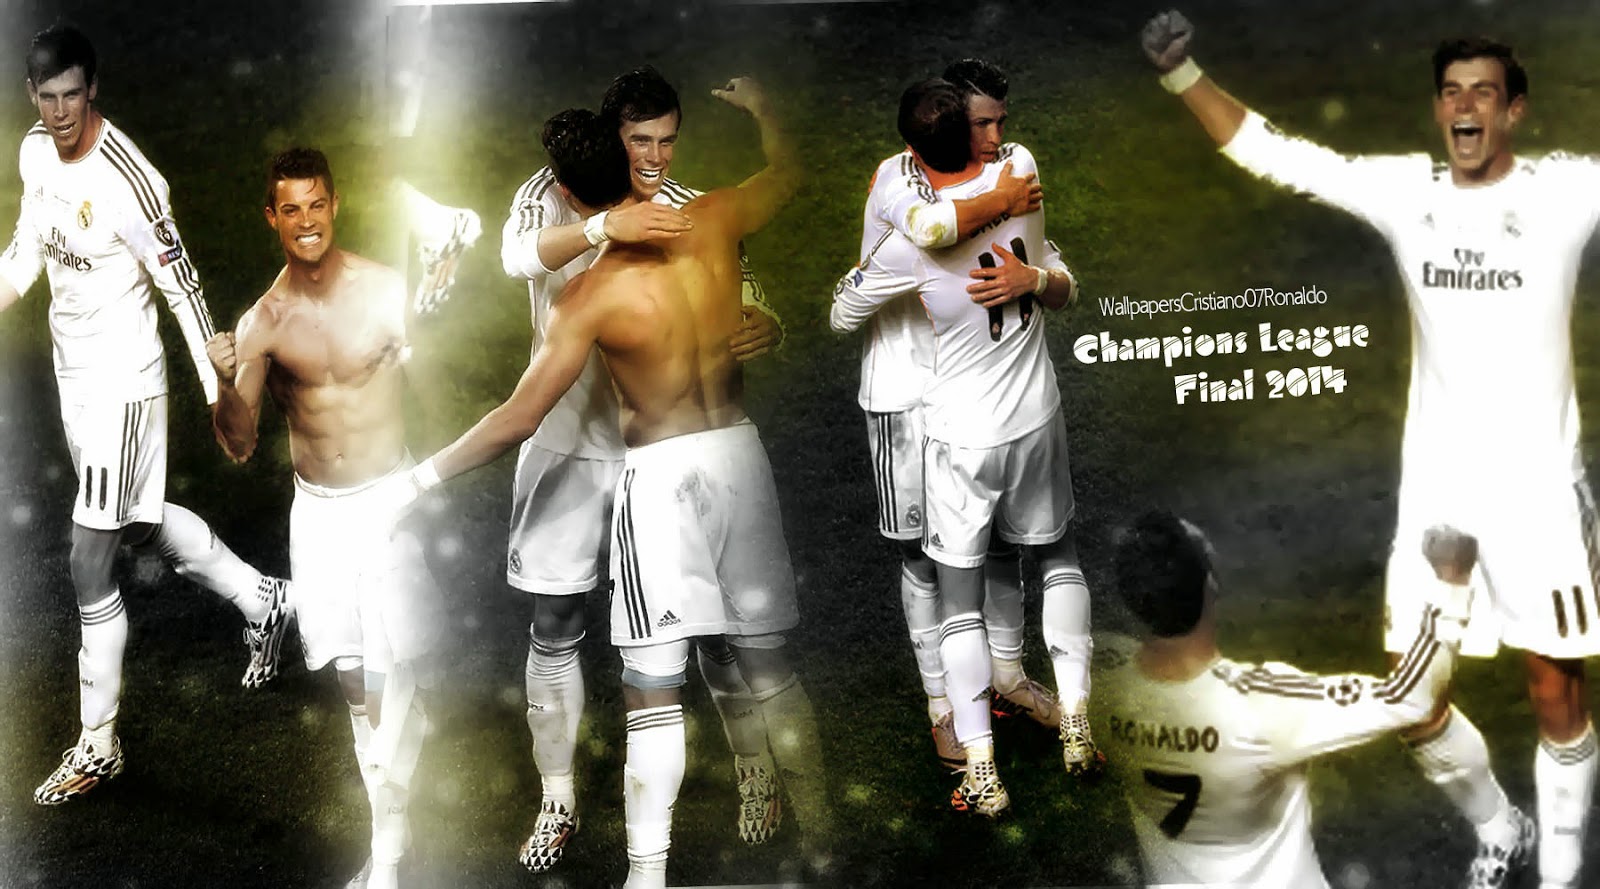 Cristiano Ronaldo Wallpaper Gareth Bale